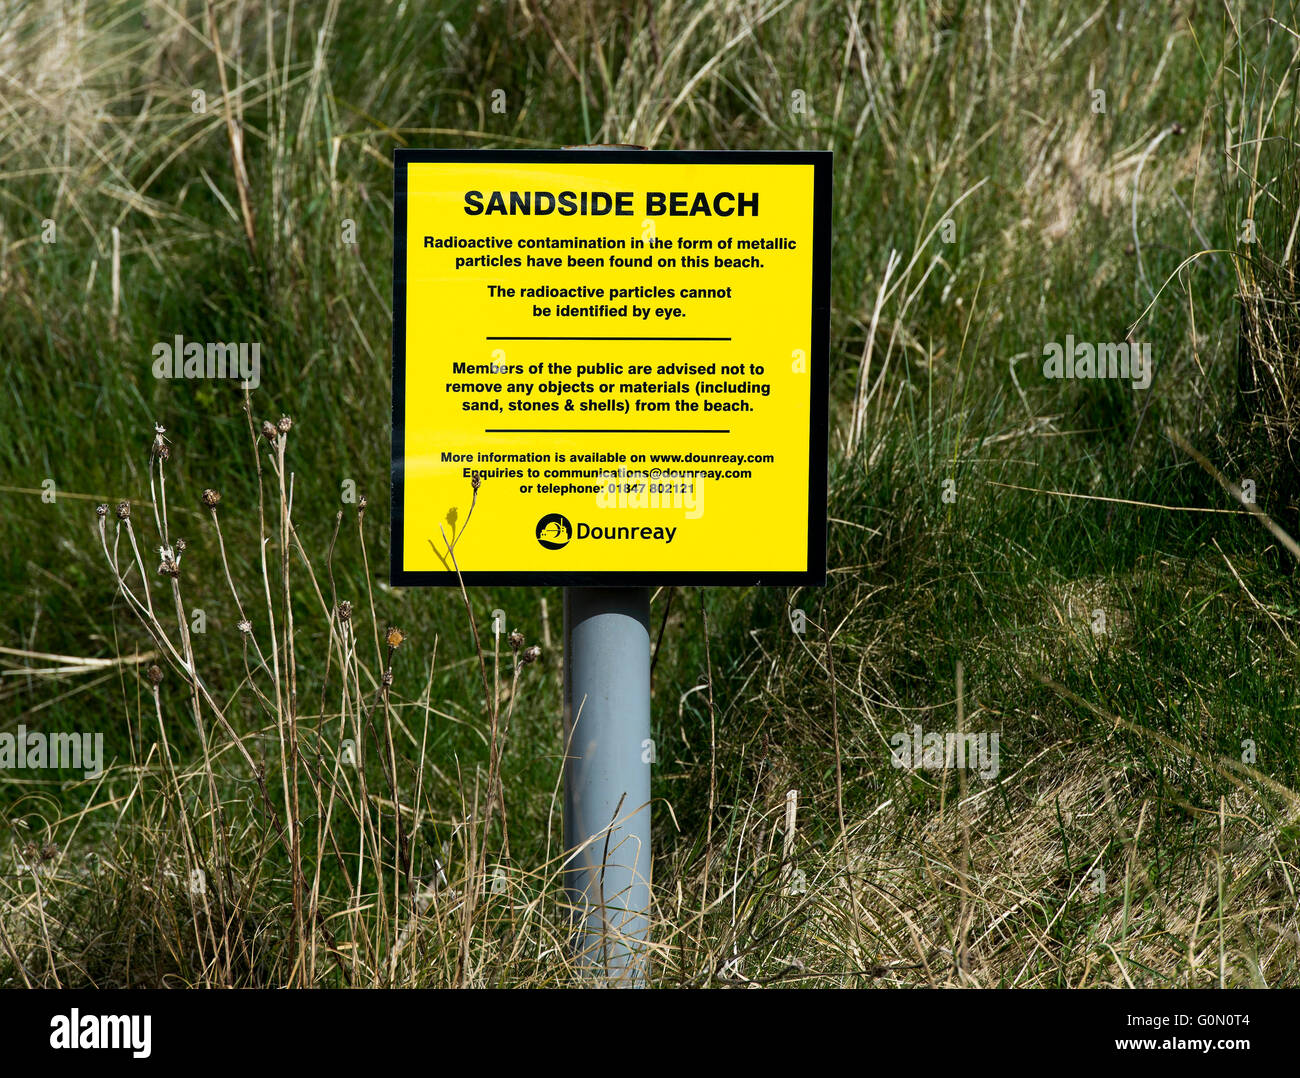 20/04/2016, l'avertissement de signe de contamination radioactive sous forme de particules métalliques à Sandside beach, Reay, Caithness, UK Banque D'Images